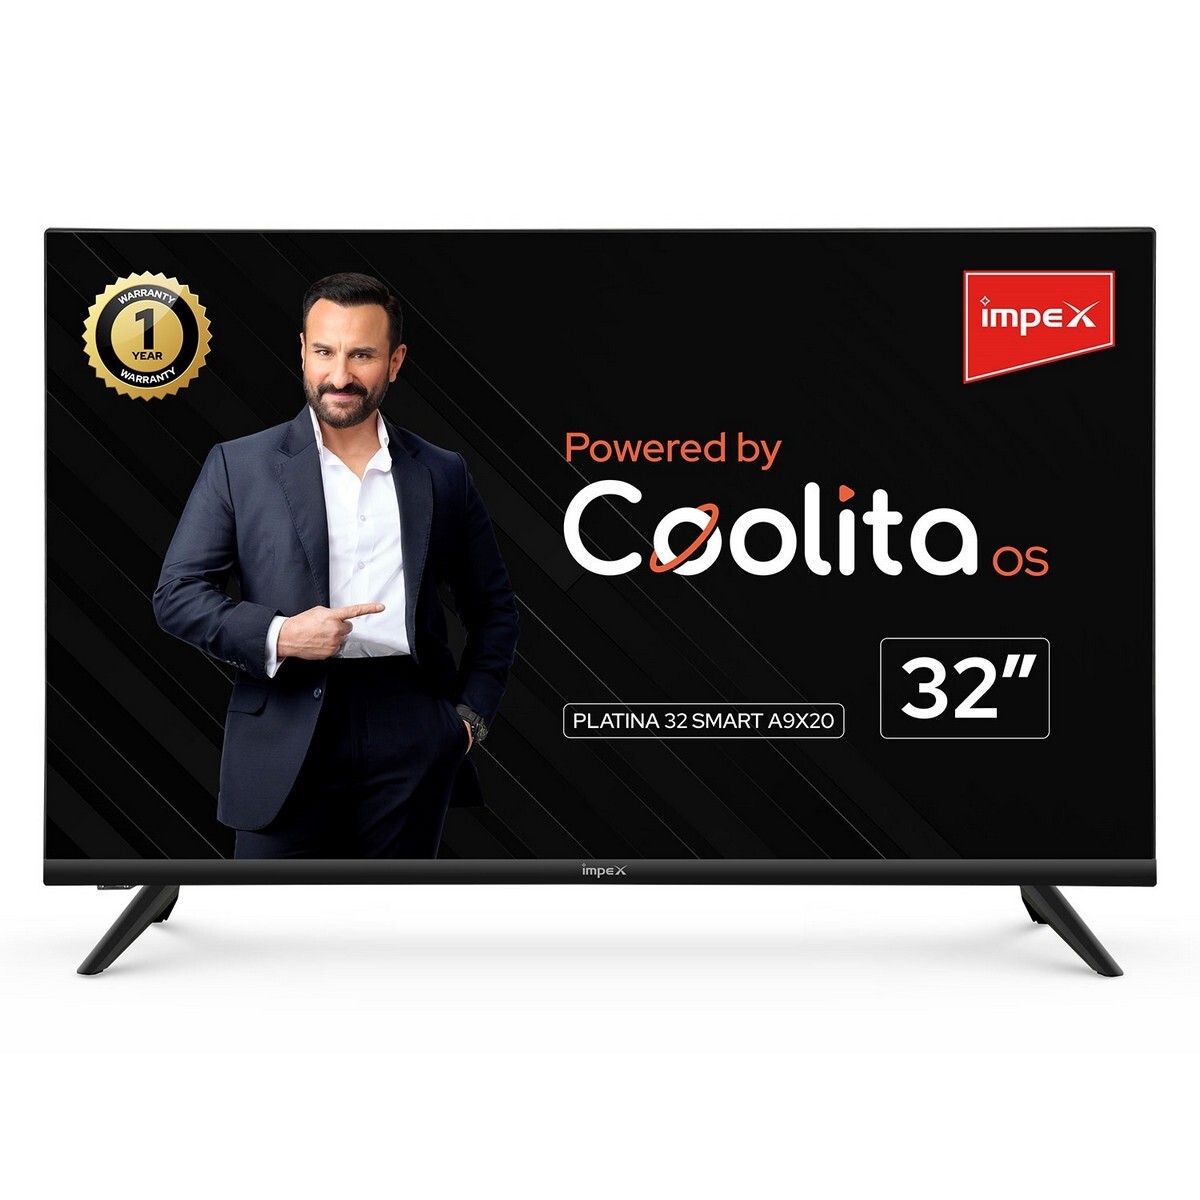 Impex Coolita OS Smart TV Platina 329X20 32"